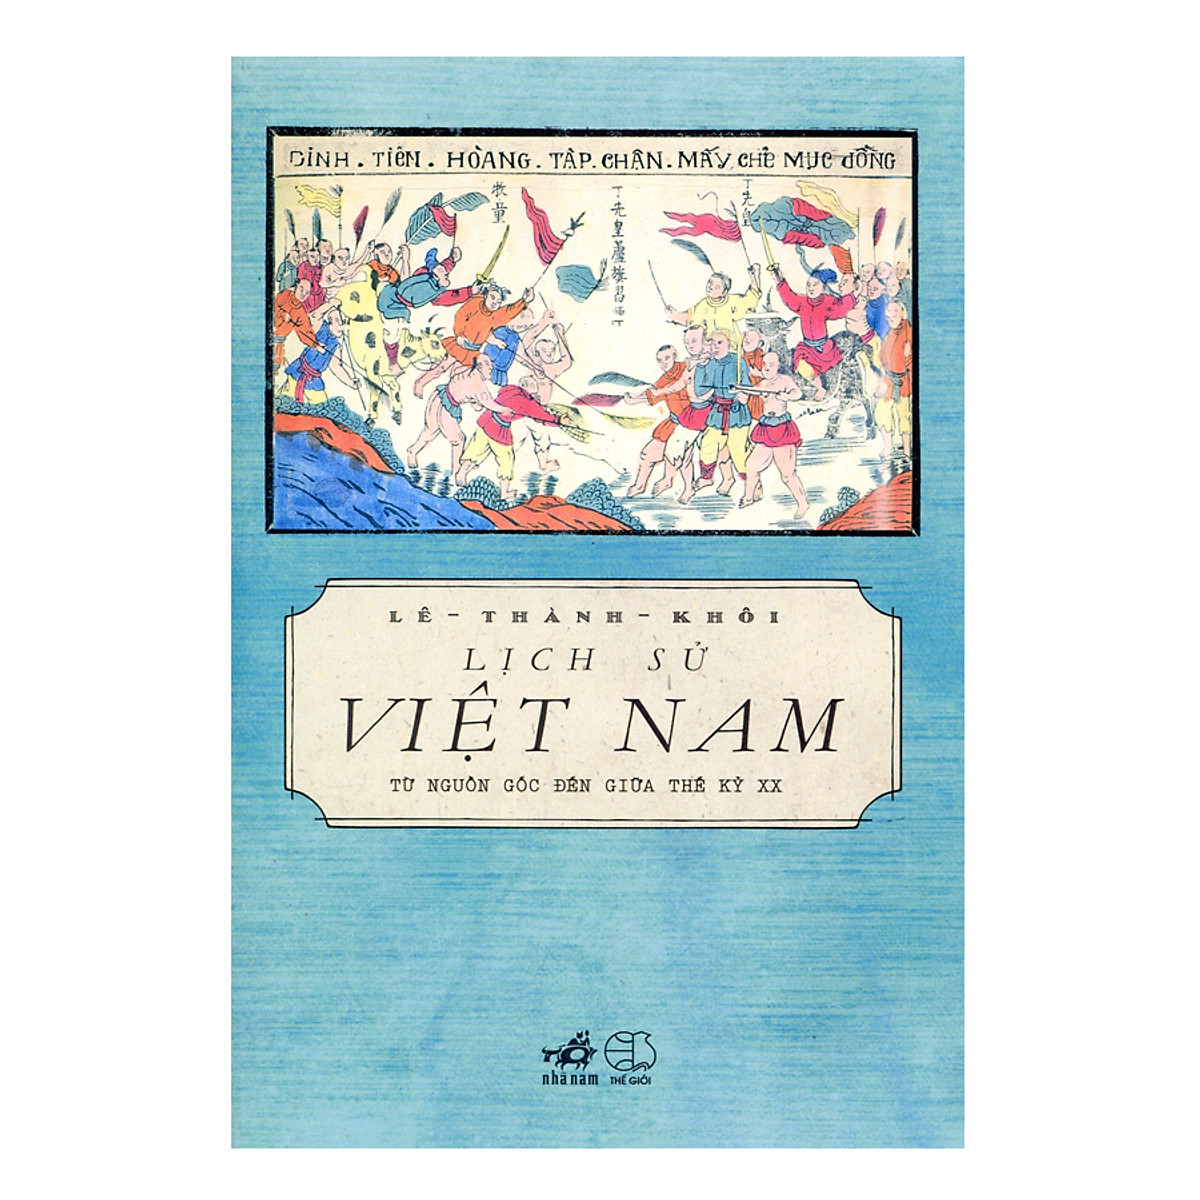 Combo 2 Cuốn Lịch Sử Việt Nam Từ Nguồn Gốc Đến Giữa Thế Kỷ Xx + Đất Lề Quê Thói( Tb)